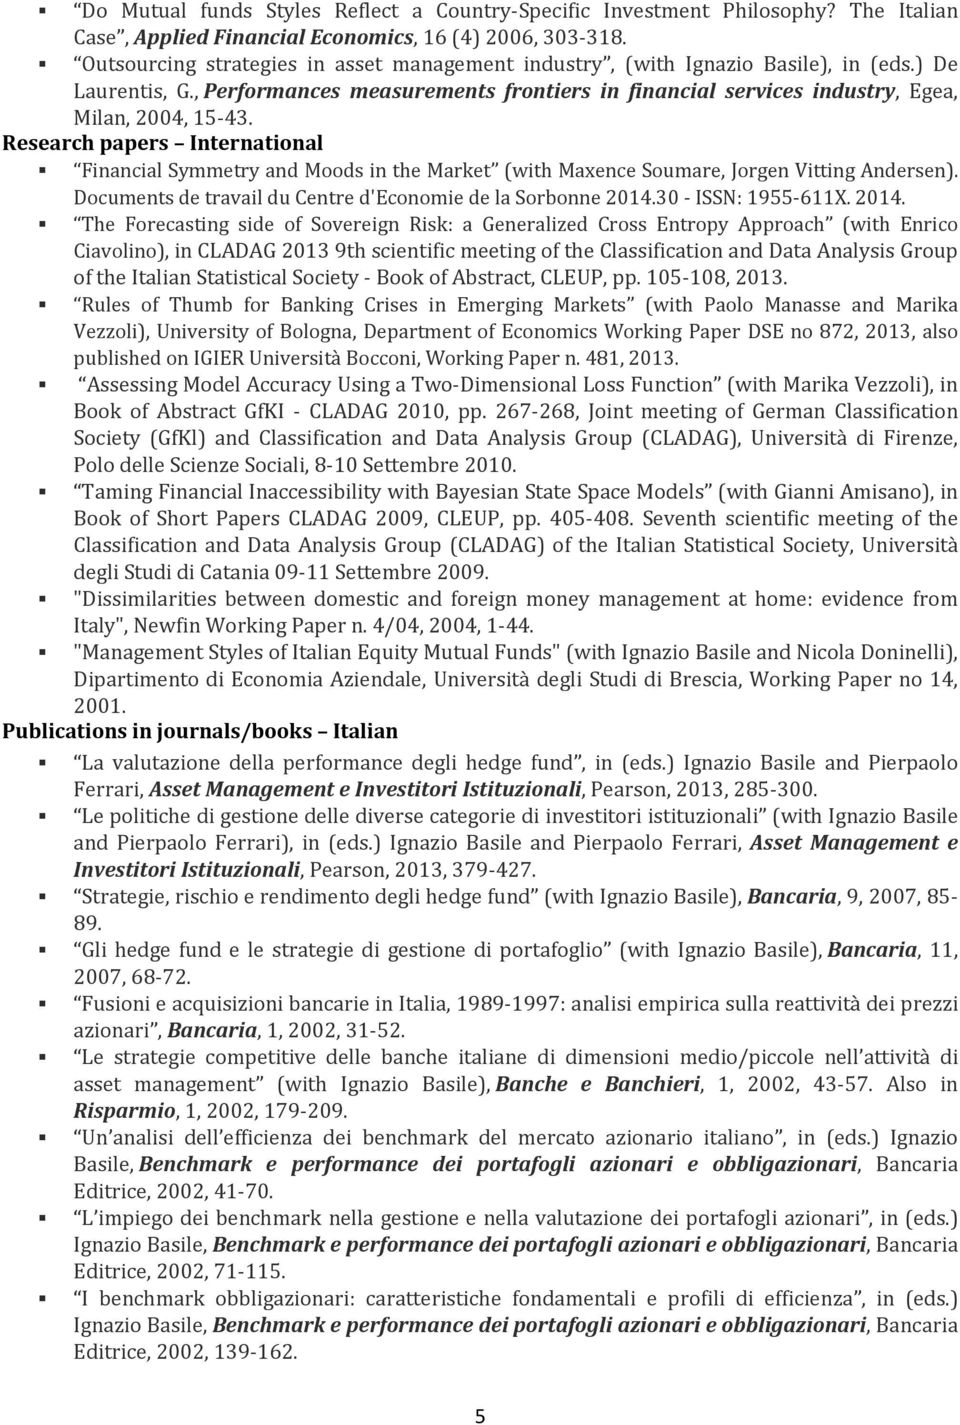 Research papers International Financial Symmetry and Moods in the Market (with Maxence Soumare, Jorgen Vitting Andersen). Documents de travail du Centre d'economie de la Sorbonne 2014.